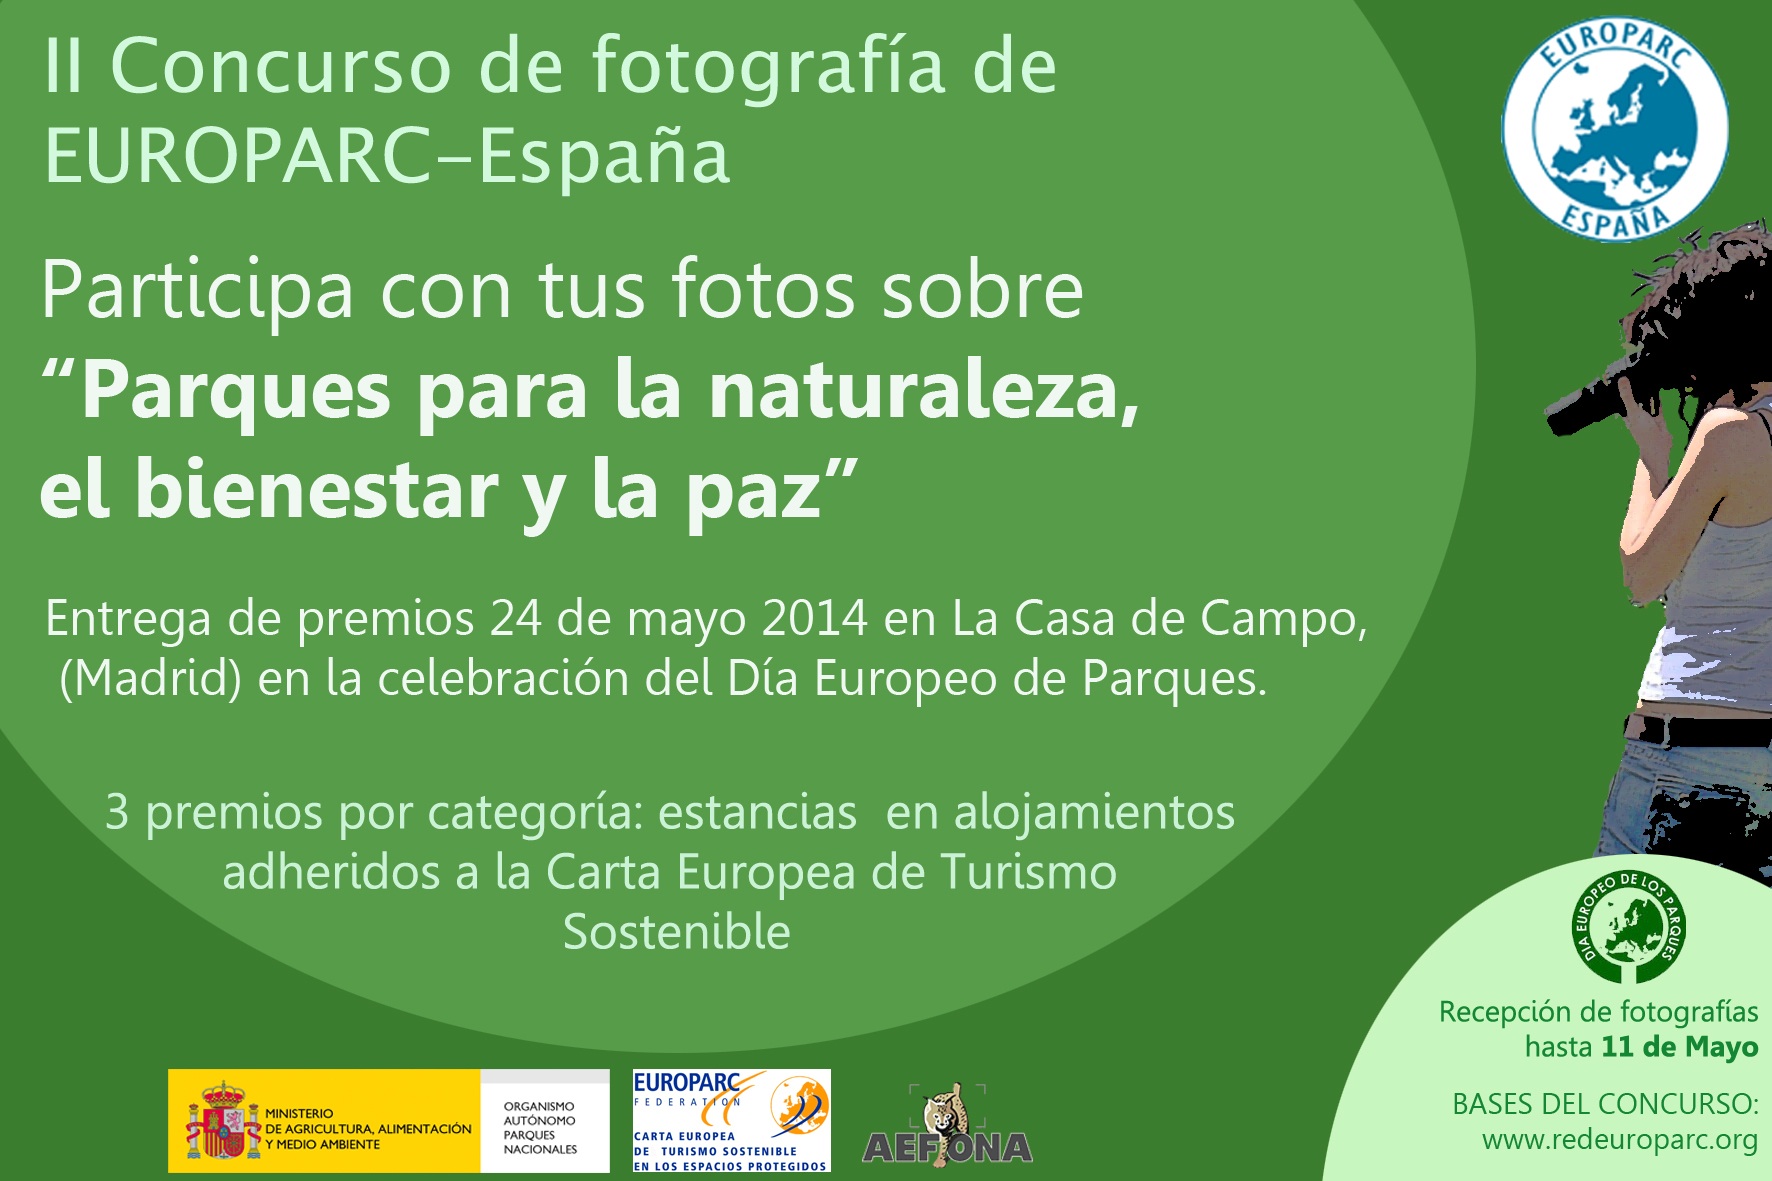 Concurso de Fotografía Europarc